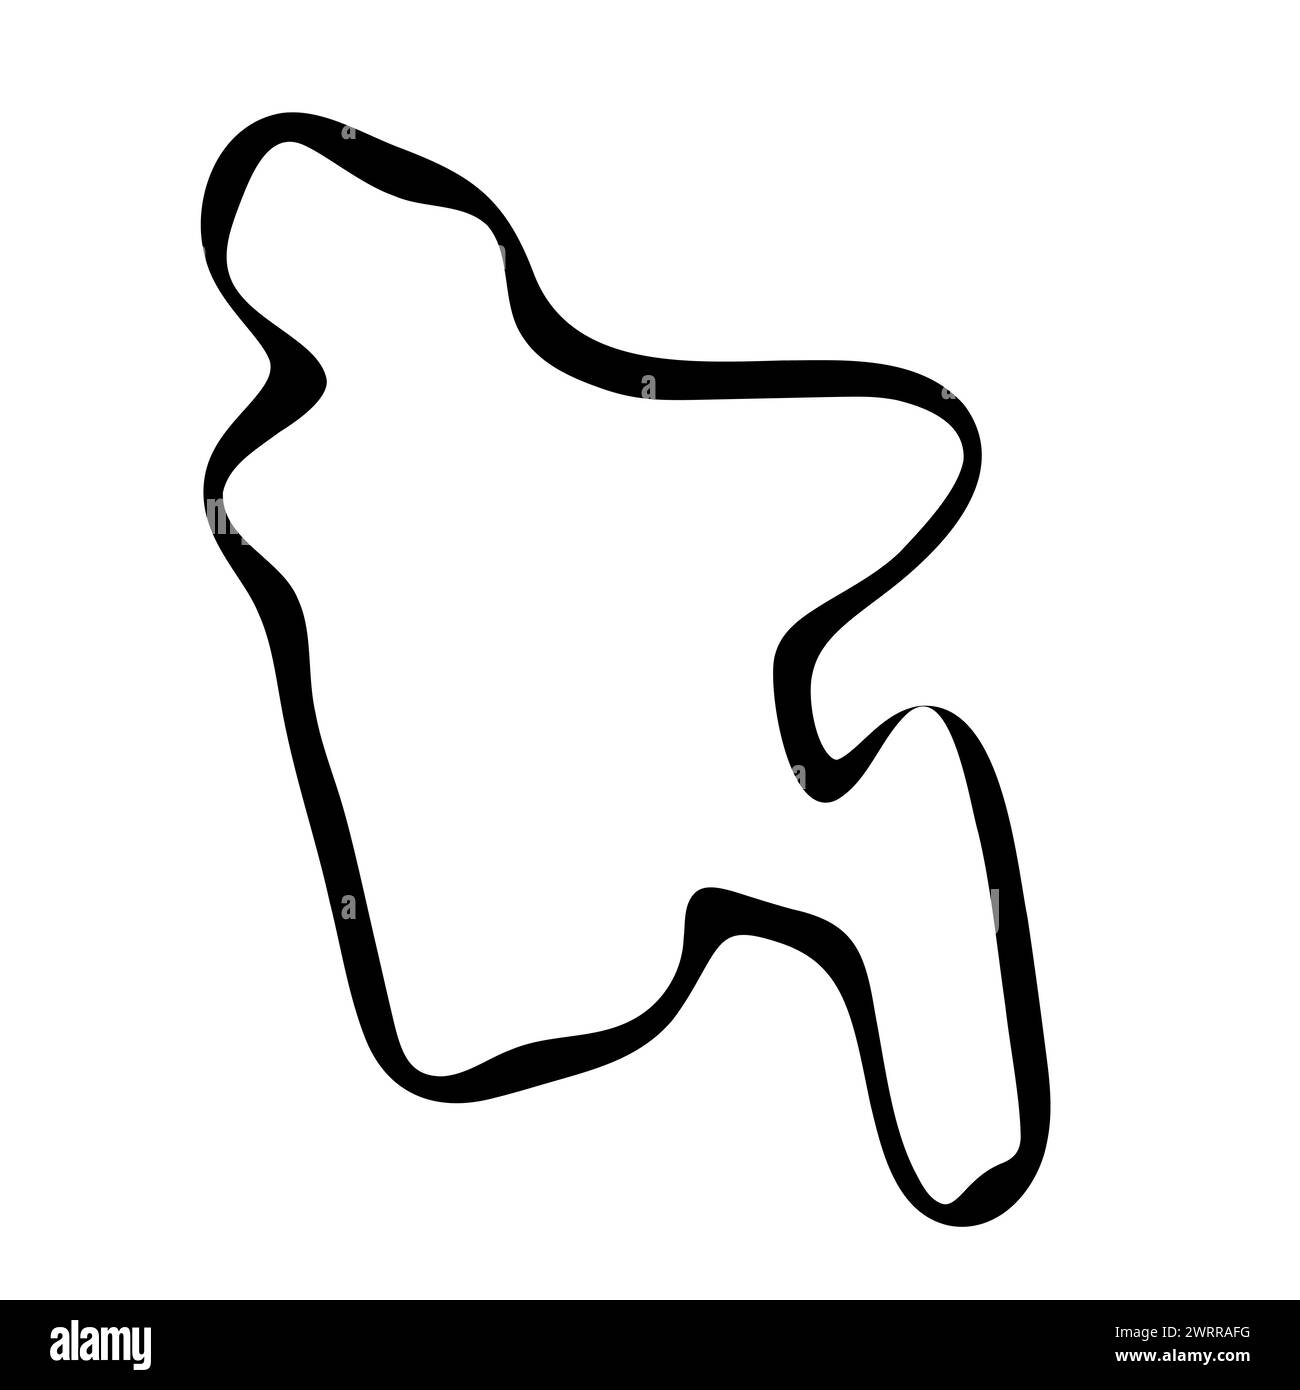 Carte simplifiée du Bangladesh. Contour lisse d'encre noire sur fond blanc. Icône vectorielle simple Illustration de Vecteur